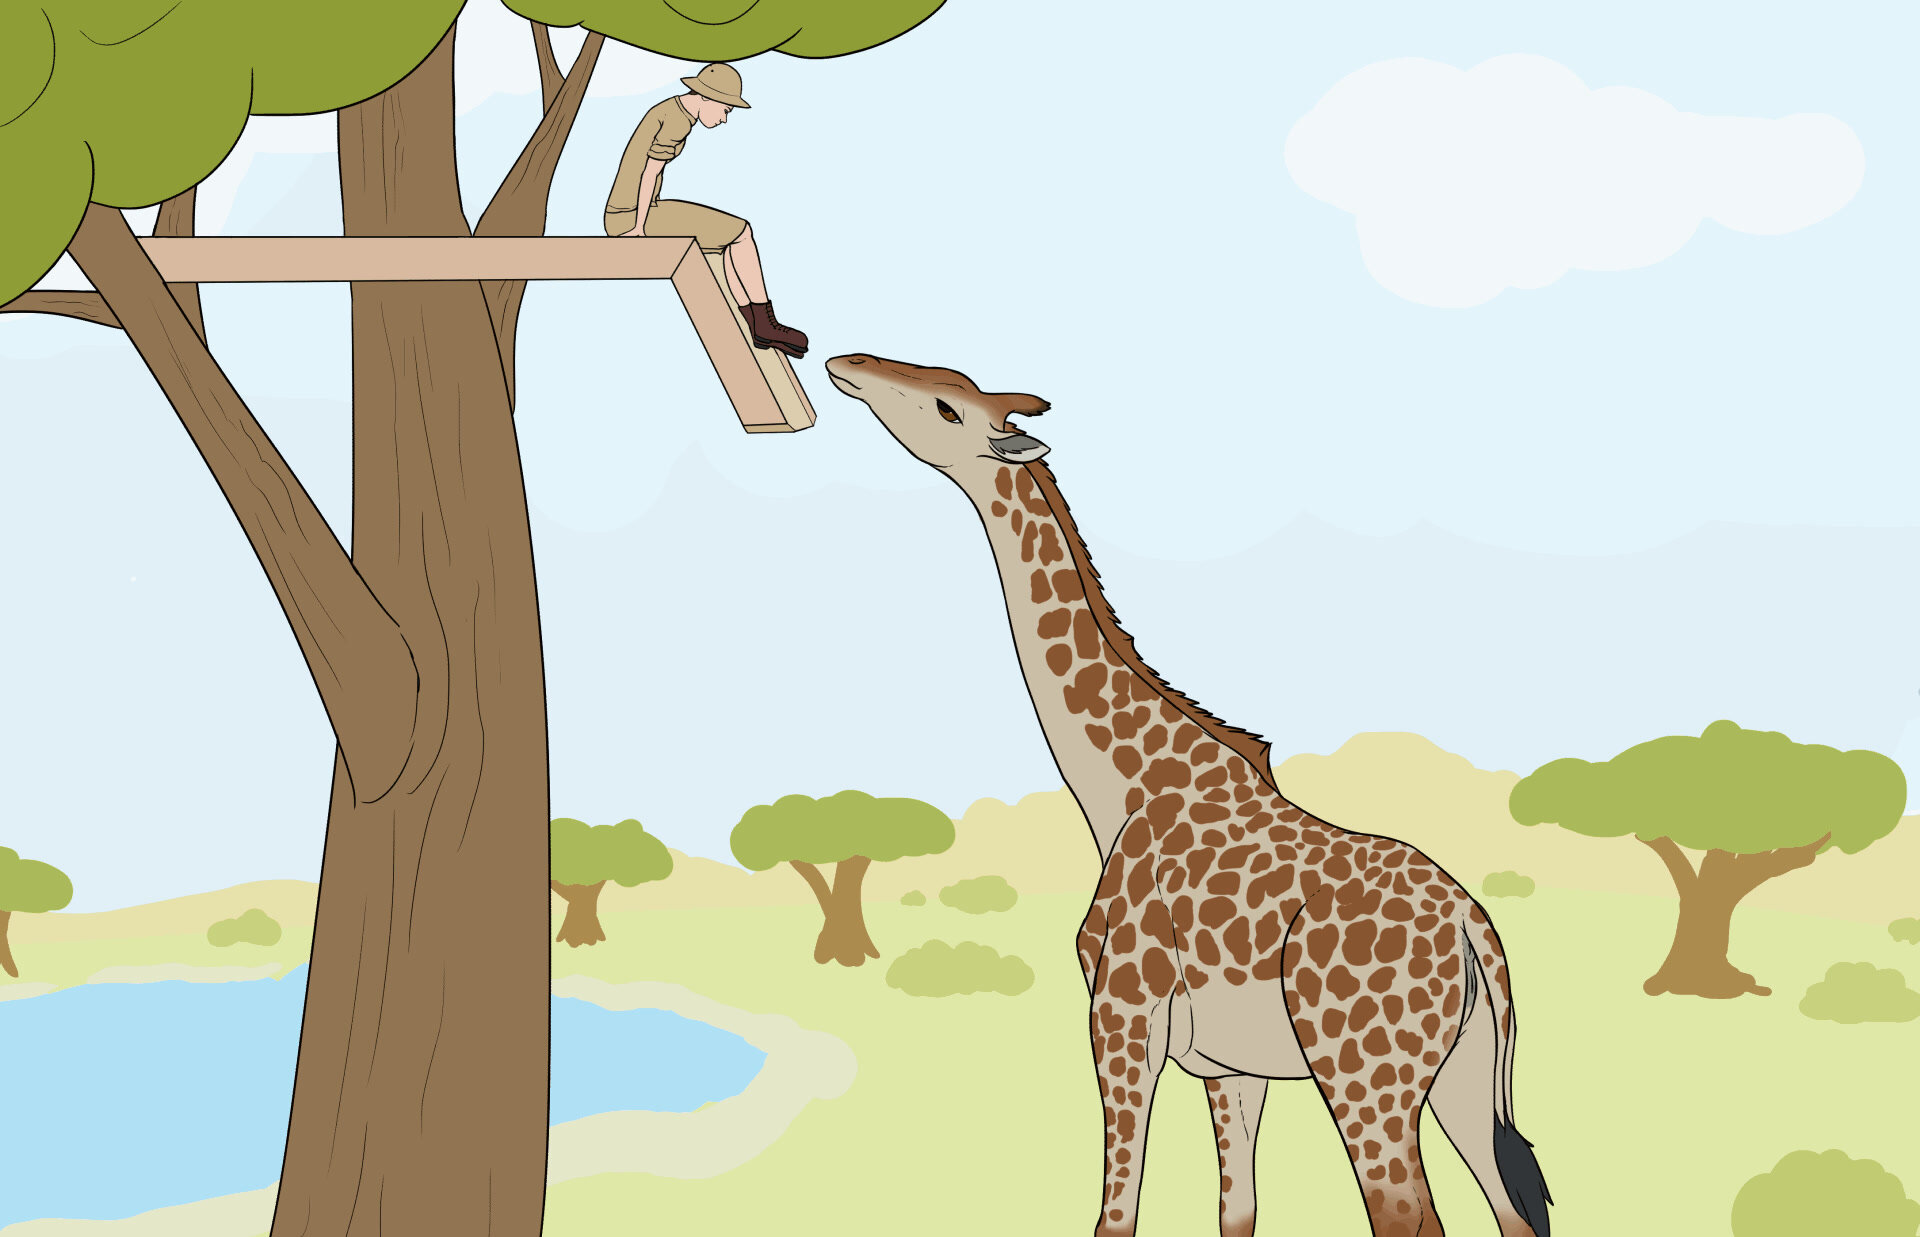 Giraffe having lunch